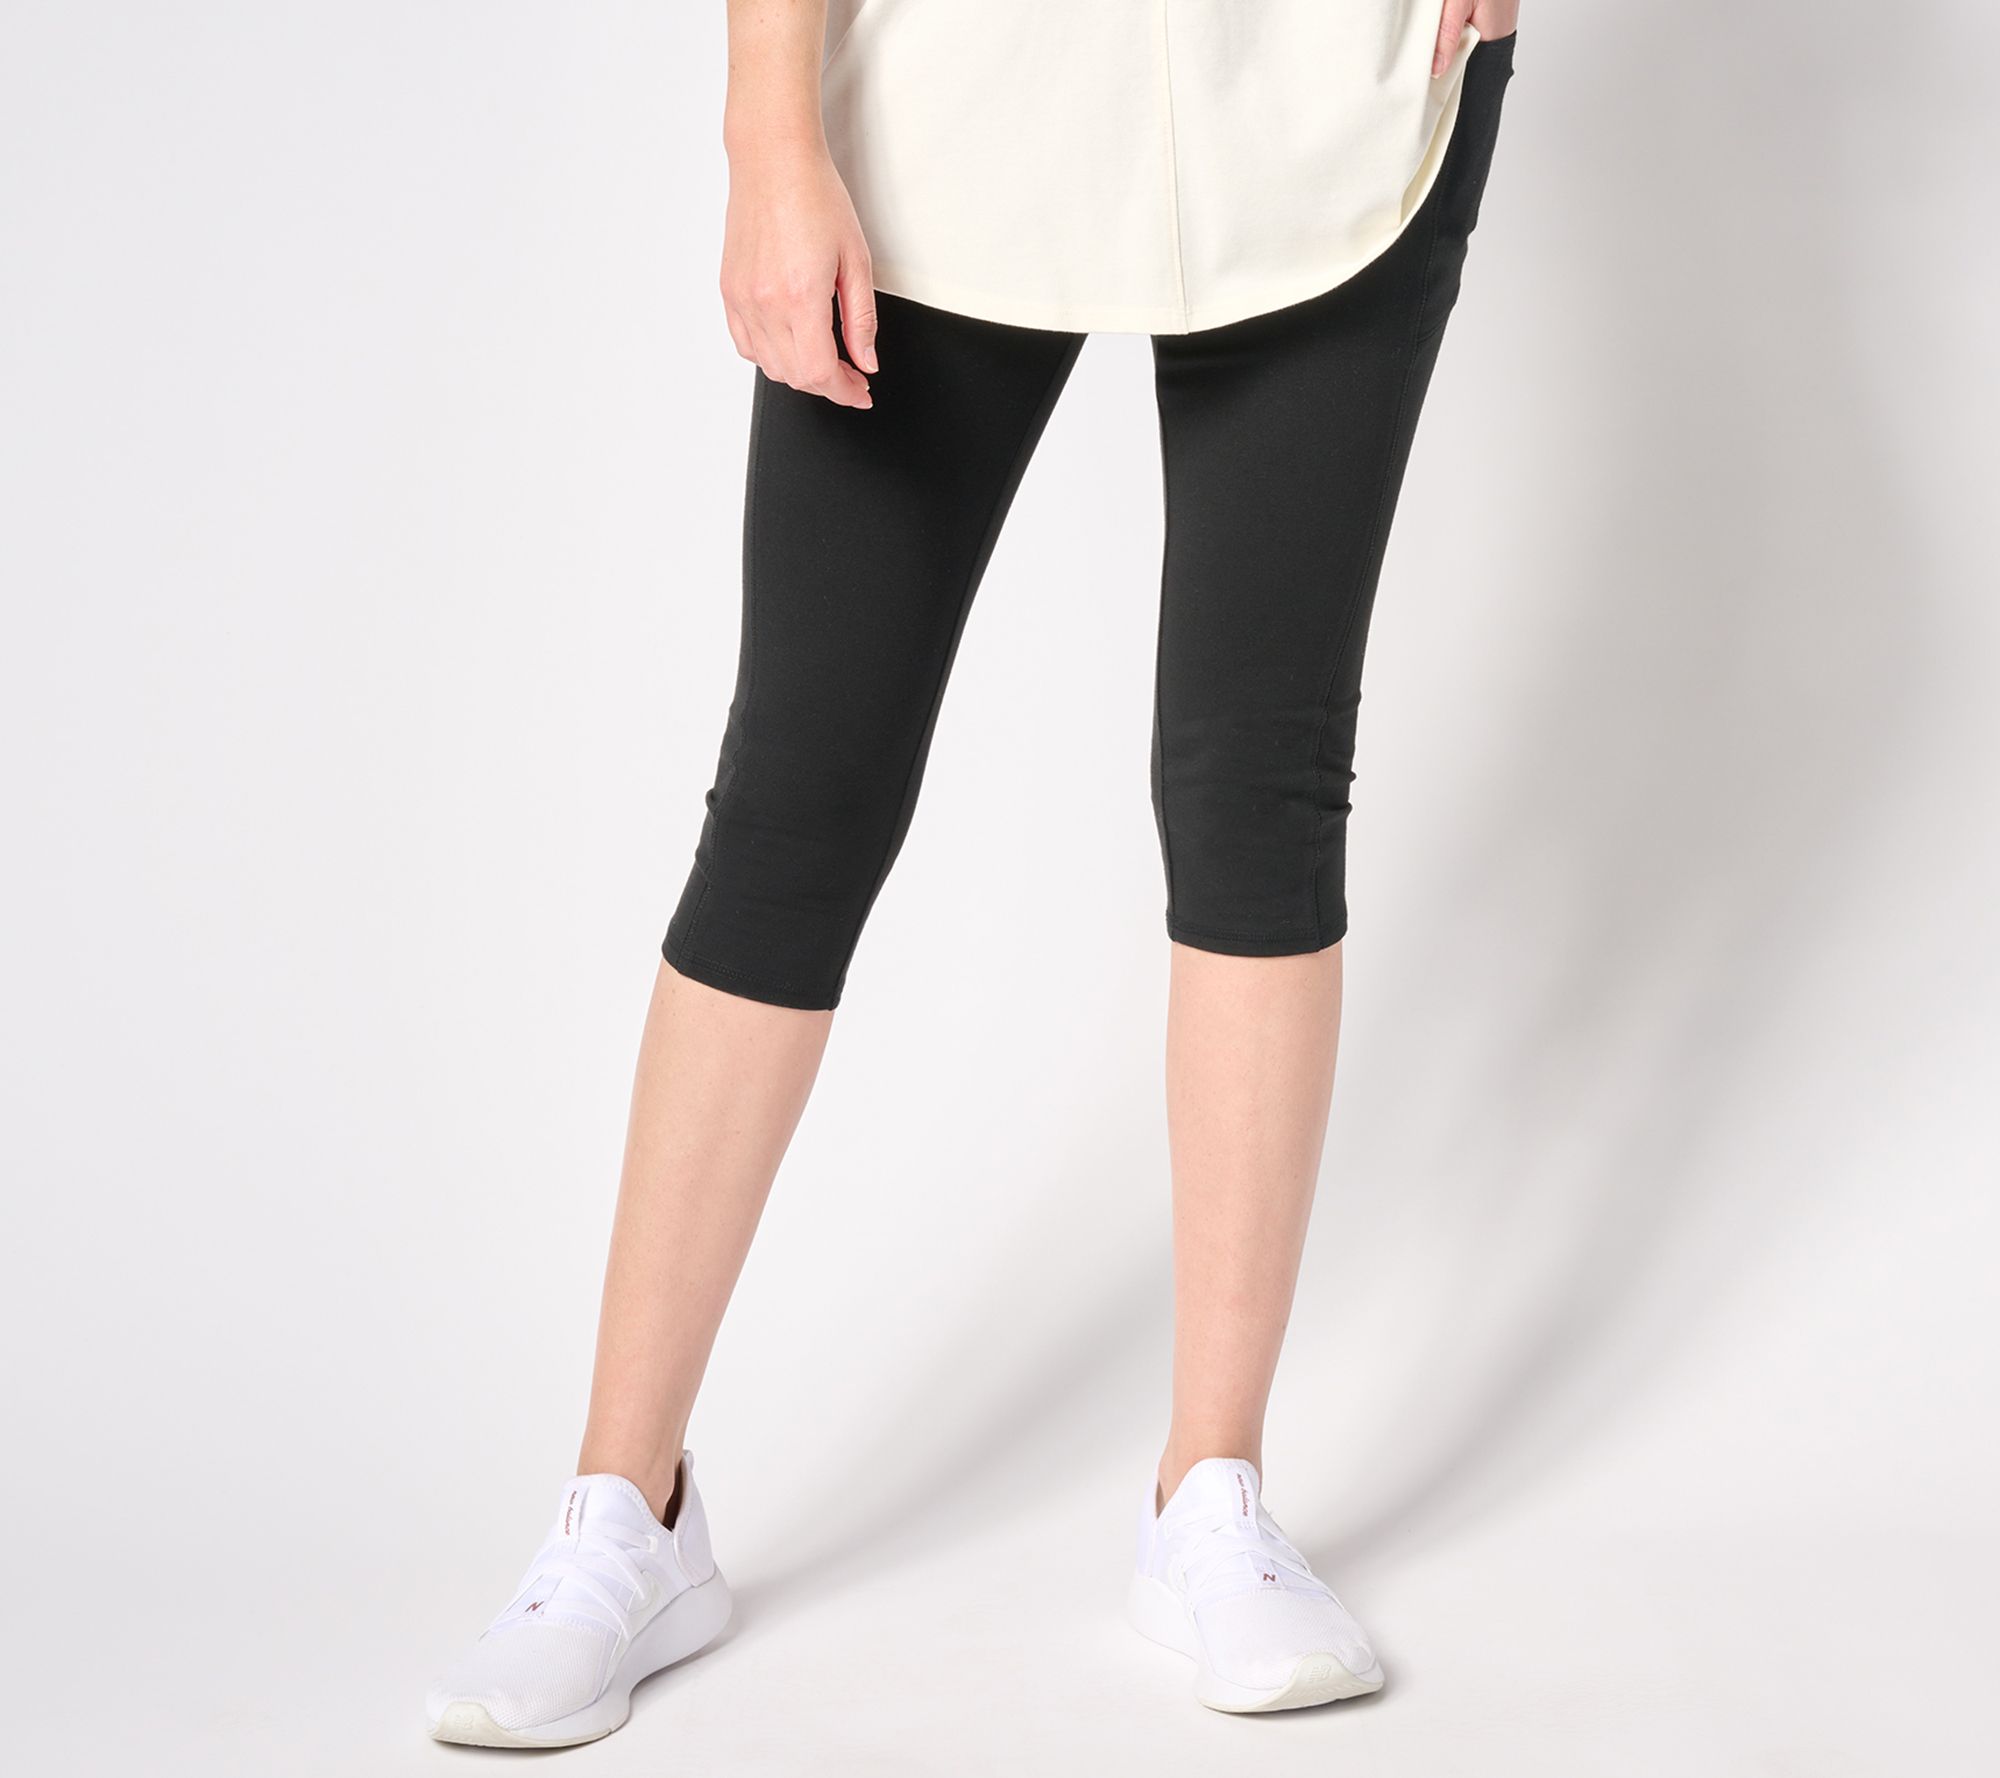 david n sport, Pants & Jumpsuits, Good Condition White Capri Pants Size 2